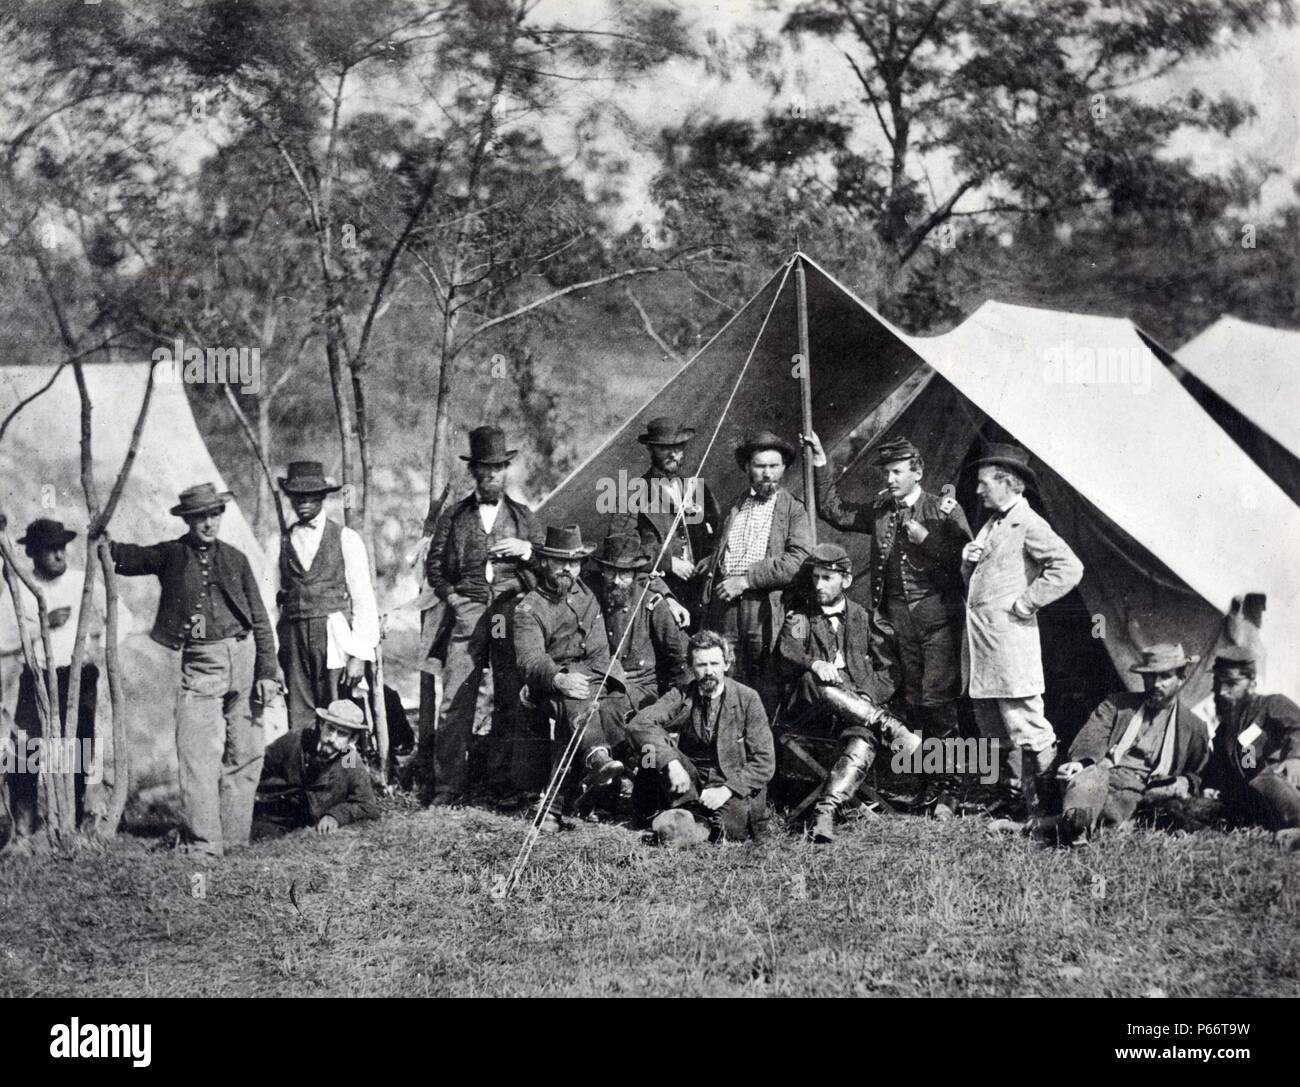 Ereignisse des Krieges, Gruppe im Secret Service Abteilung Zentrale, Armee des Potomac, Antietam, Oktober 1862. Foto zeigt 14 Männer, darunter Allan und William Pinkerton, und mehrere Offiziere in der Armee der Union vor einem Zelt gestellt. Stockfoto